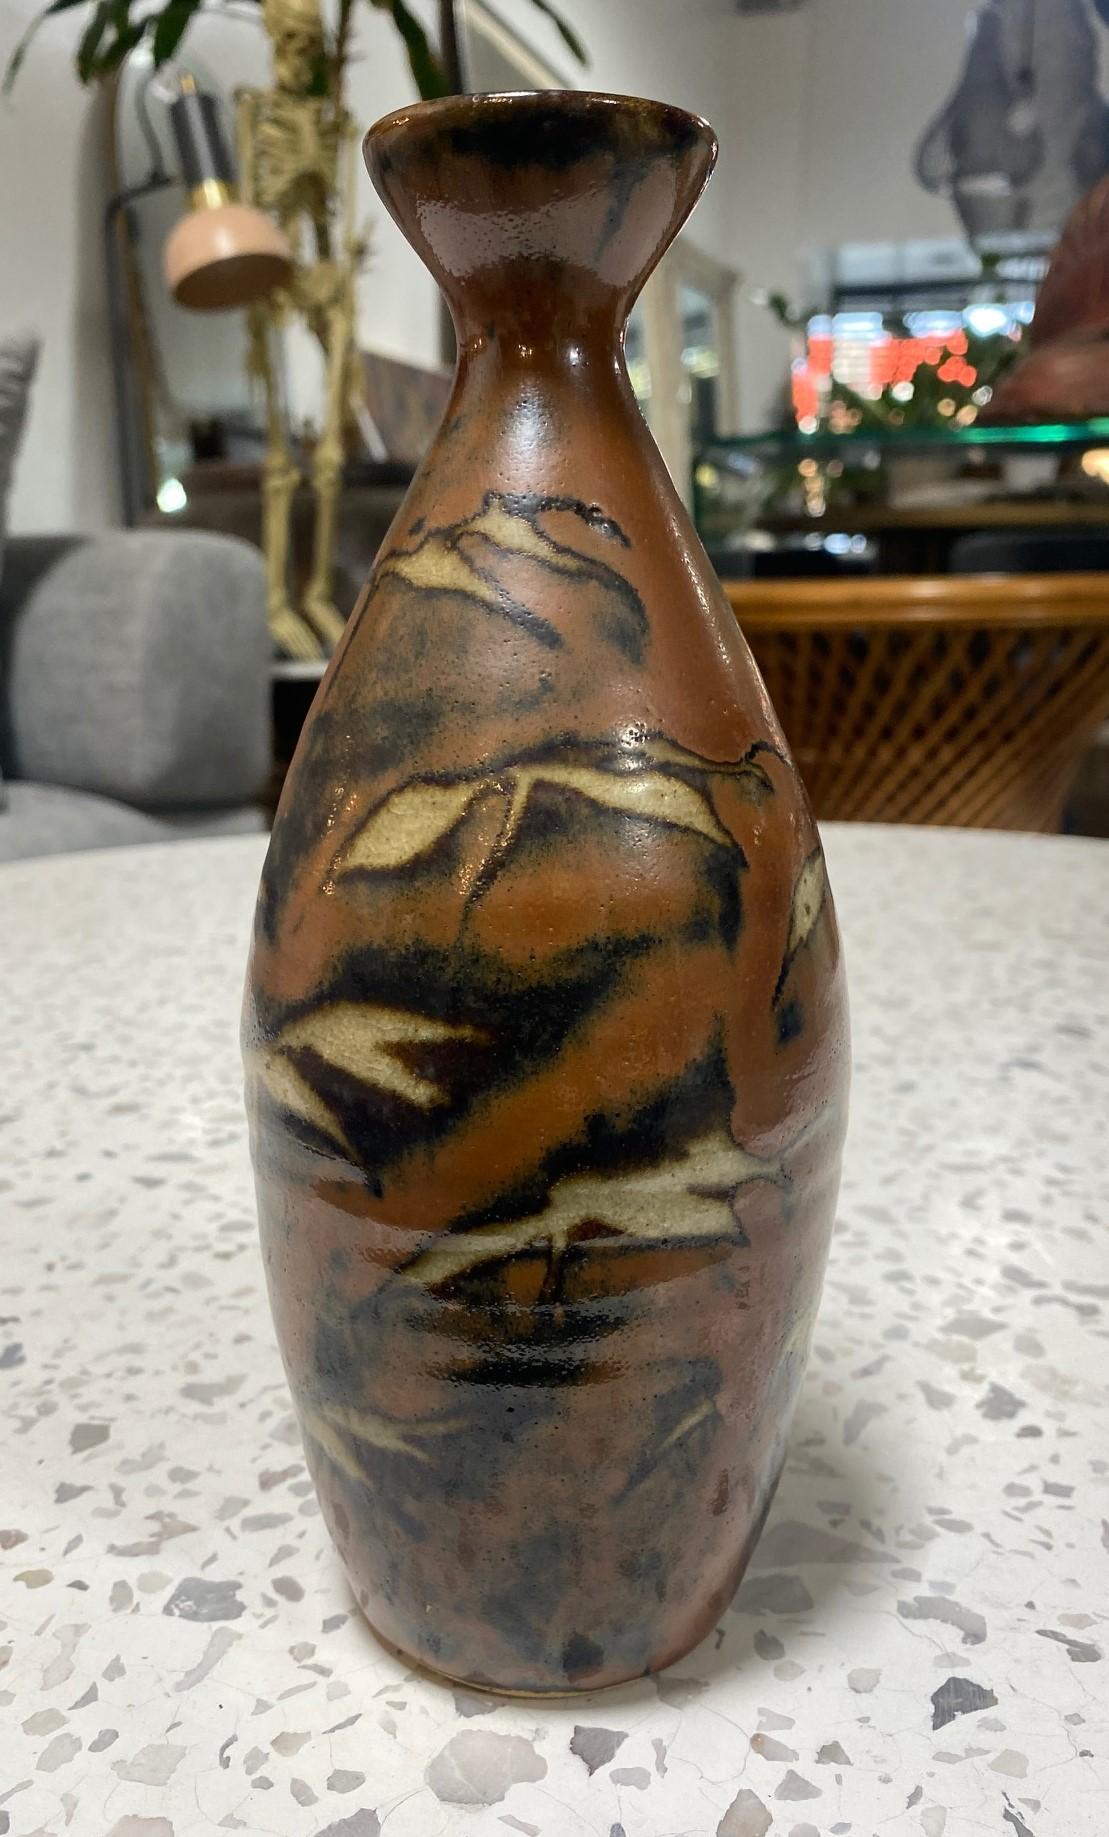 Eine exquisite, wunderschön gearbeitete, üppig glasierte Vase des japanischen Mingei-Töpfermeisters Shoji Hamada, die ein feines Beispiel seiner sehr begehrten reichen Kaki/Persimmon-Glasur darstellt. Die original Hamada gestempelte/versiegelte und